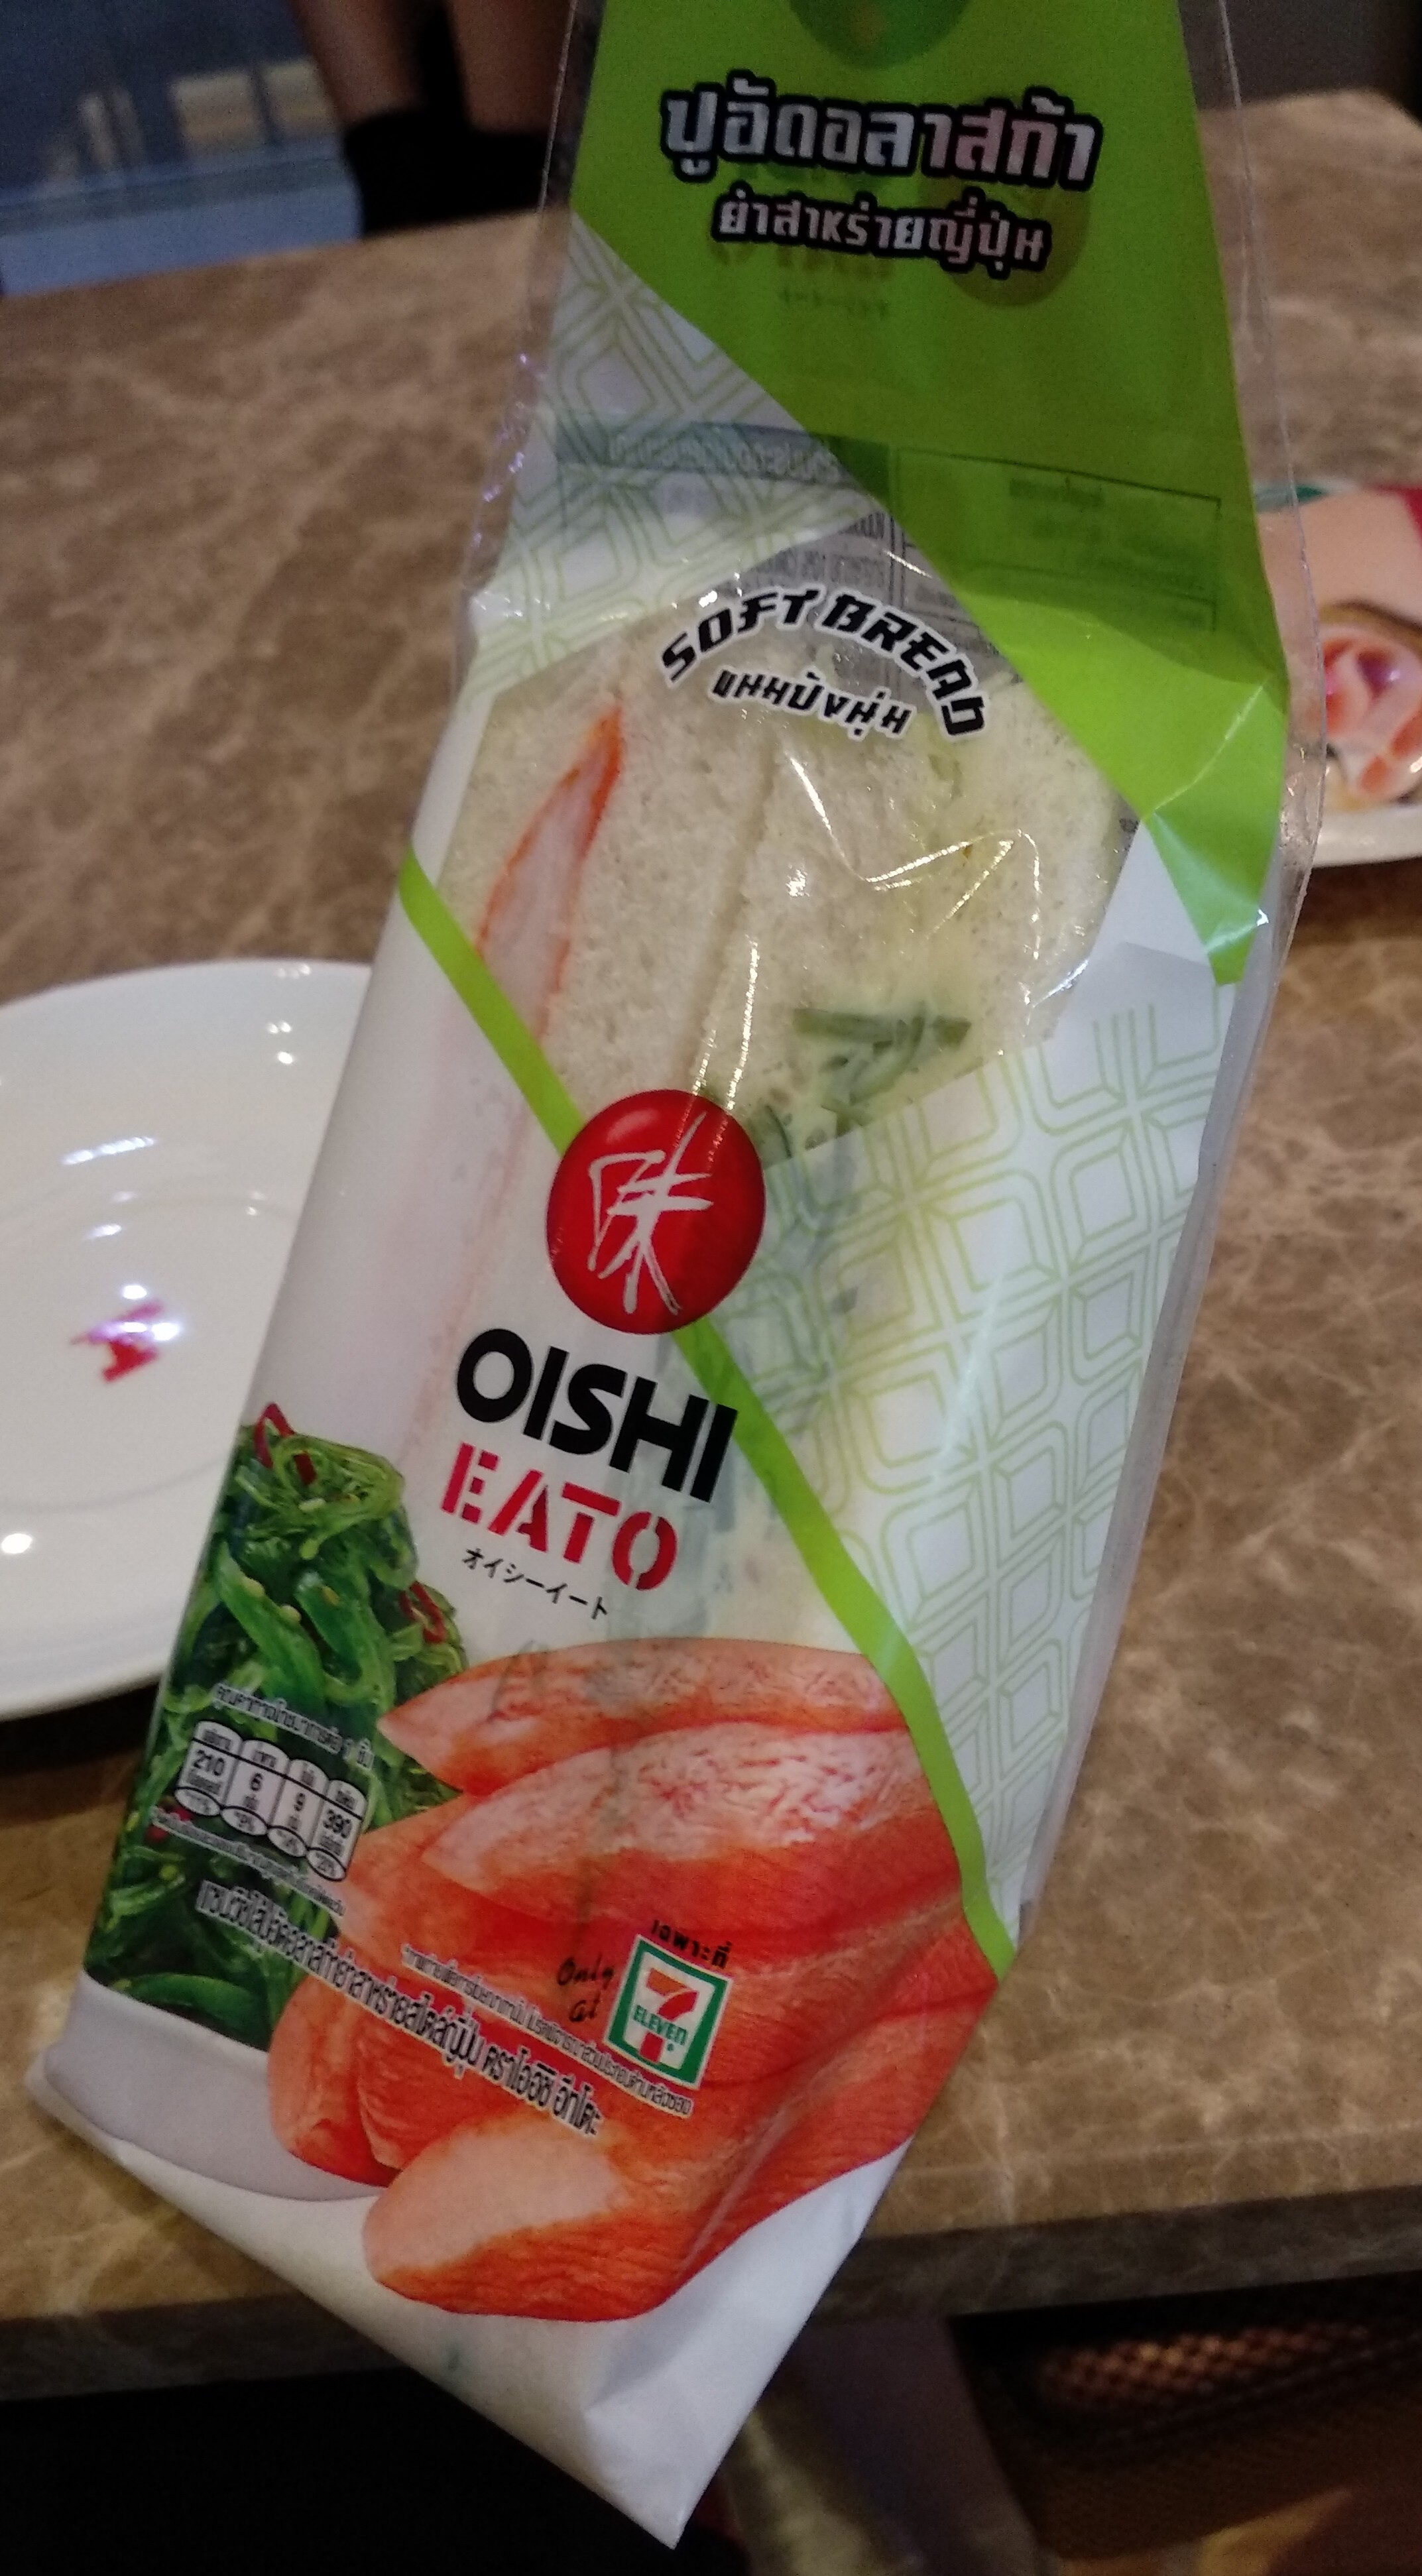 แซนวิชไส้ปูอัดอลาสก้ายำสาหร่ายญี่ปุ่น - Product - th